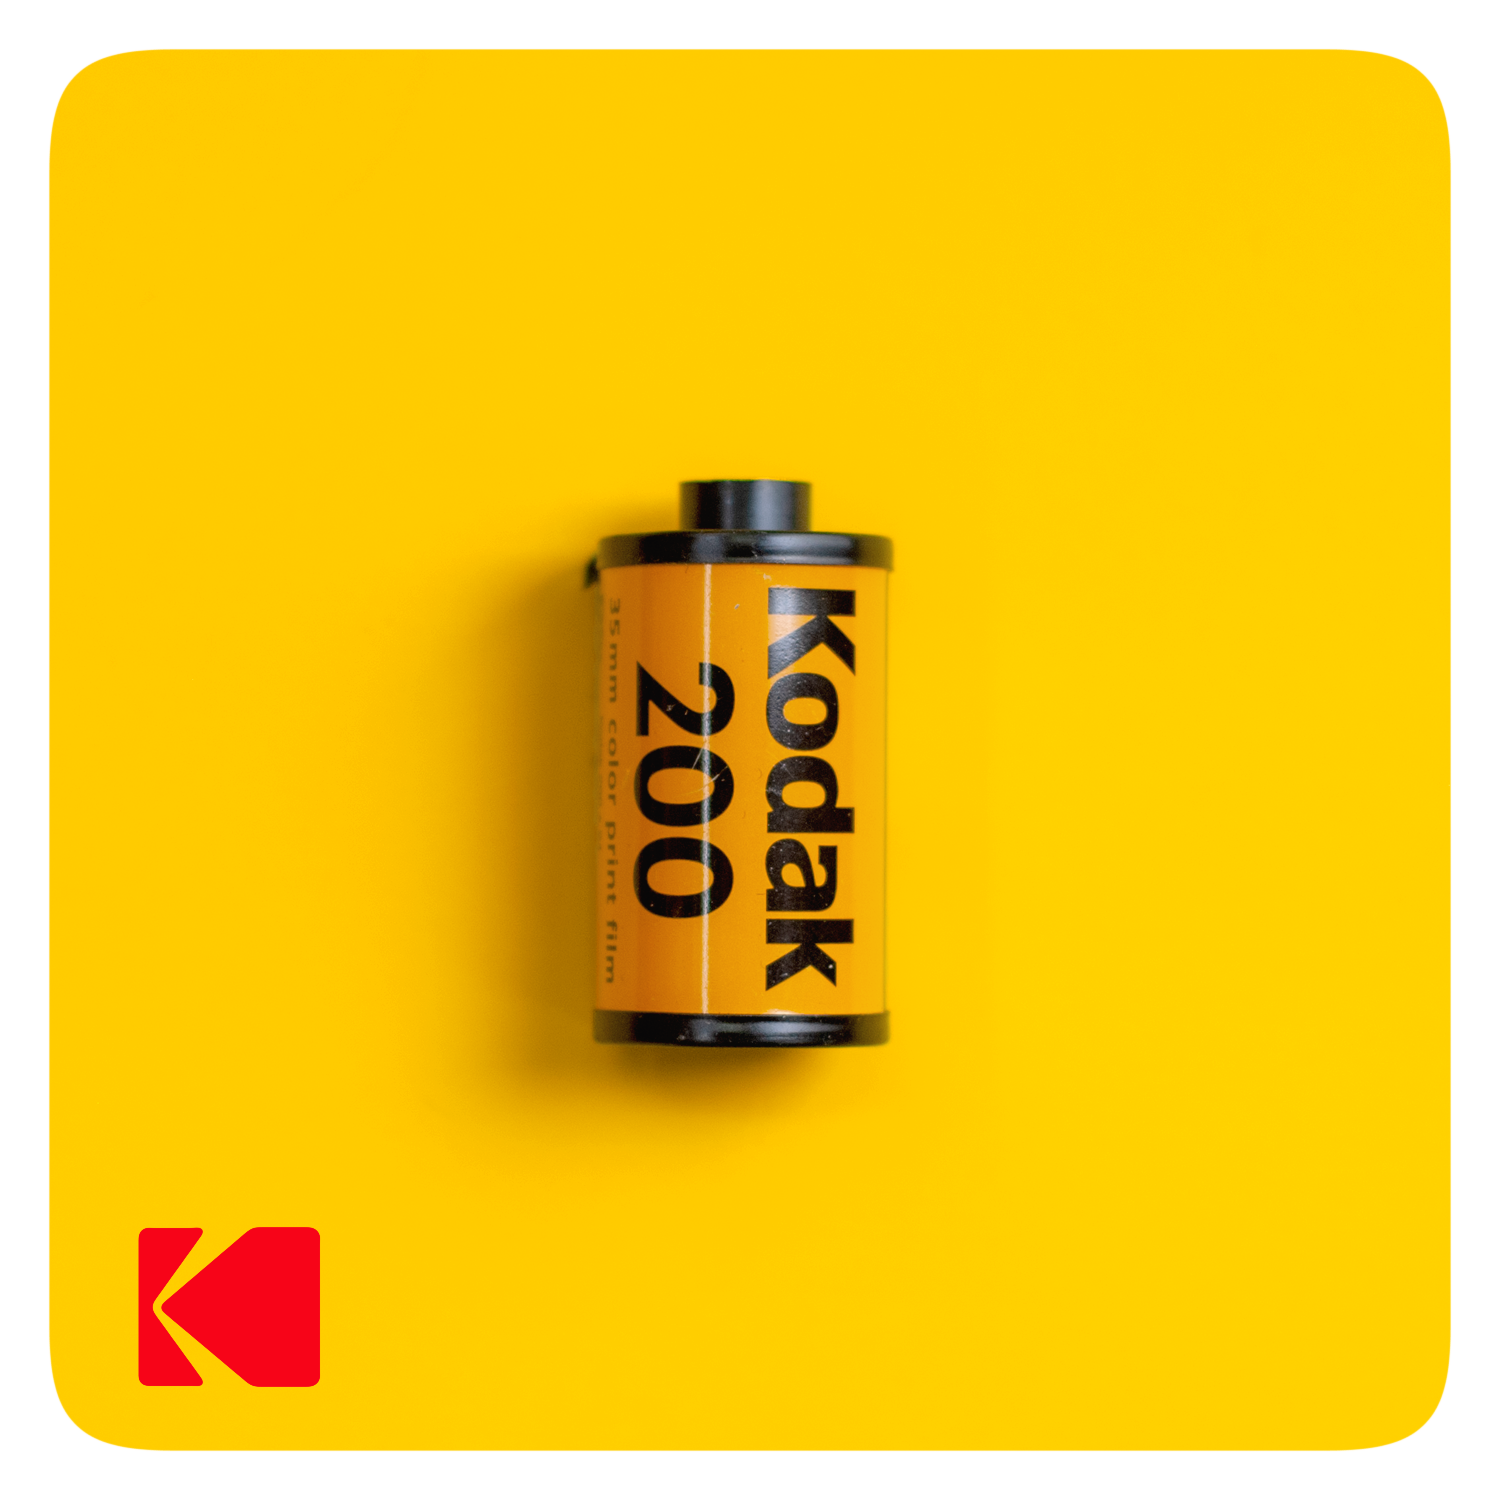 Kodak Gold 200 - 24exp